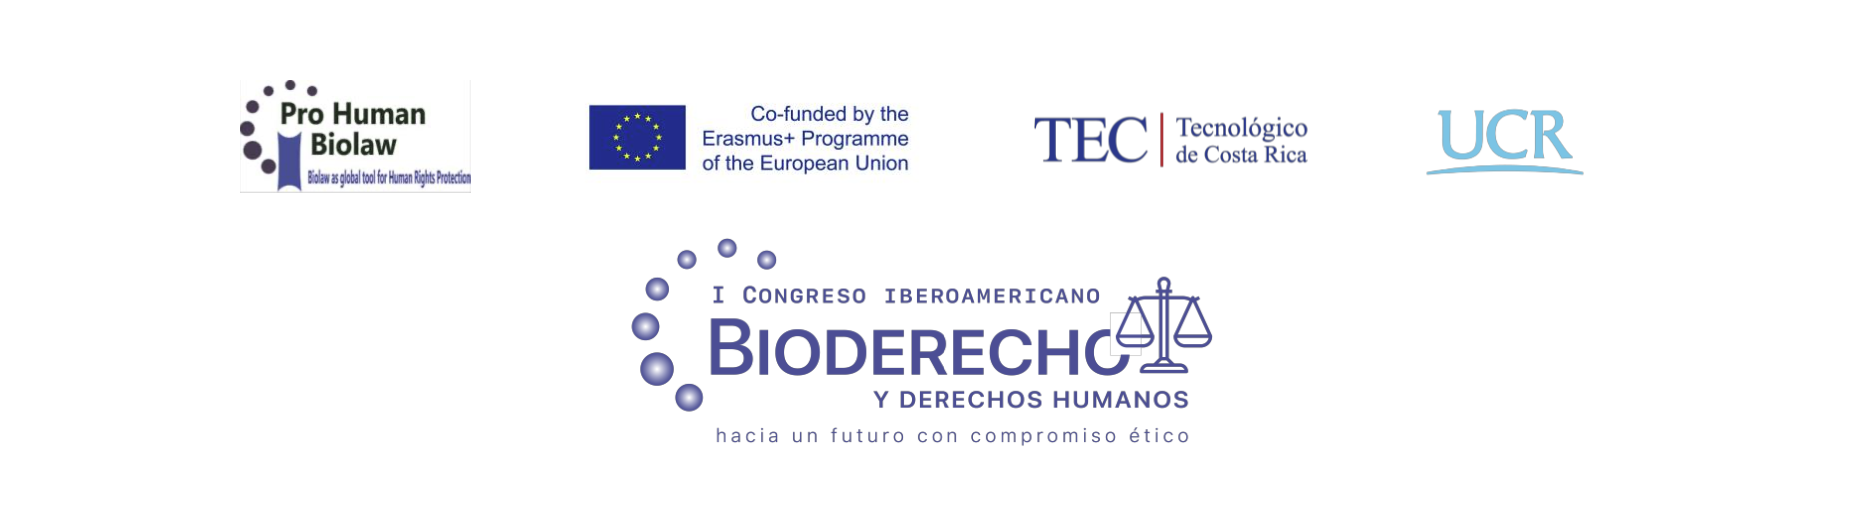 Ponencia I Congreso Iberoamericano  Bioderecho y Derechos Humanos  